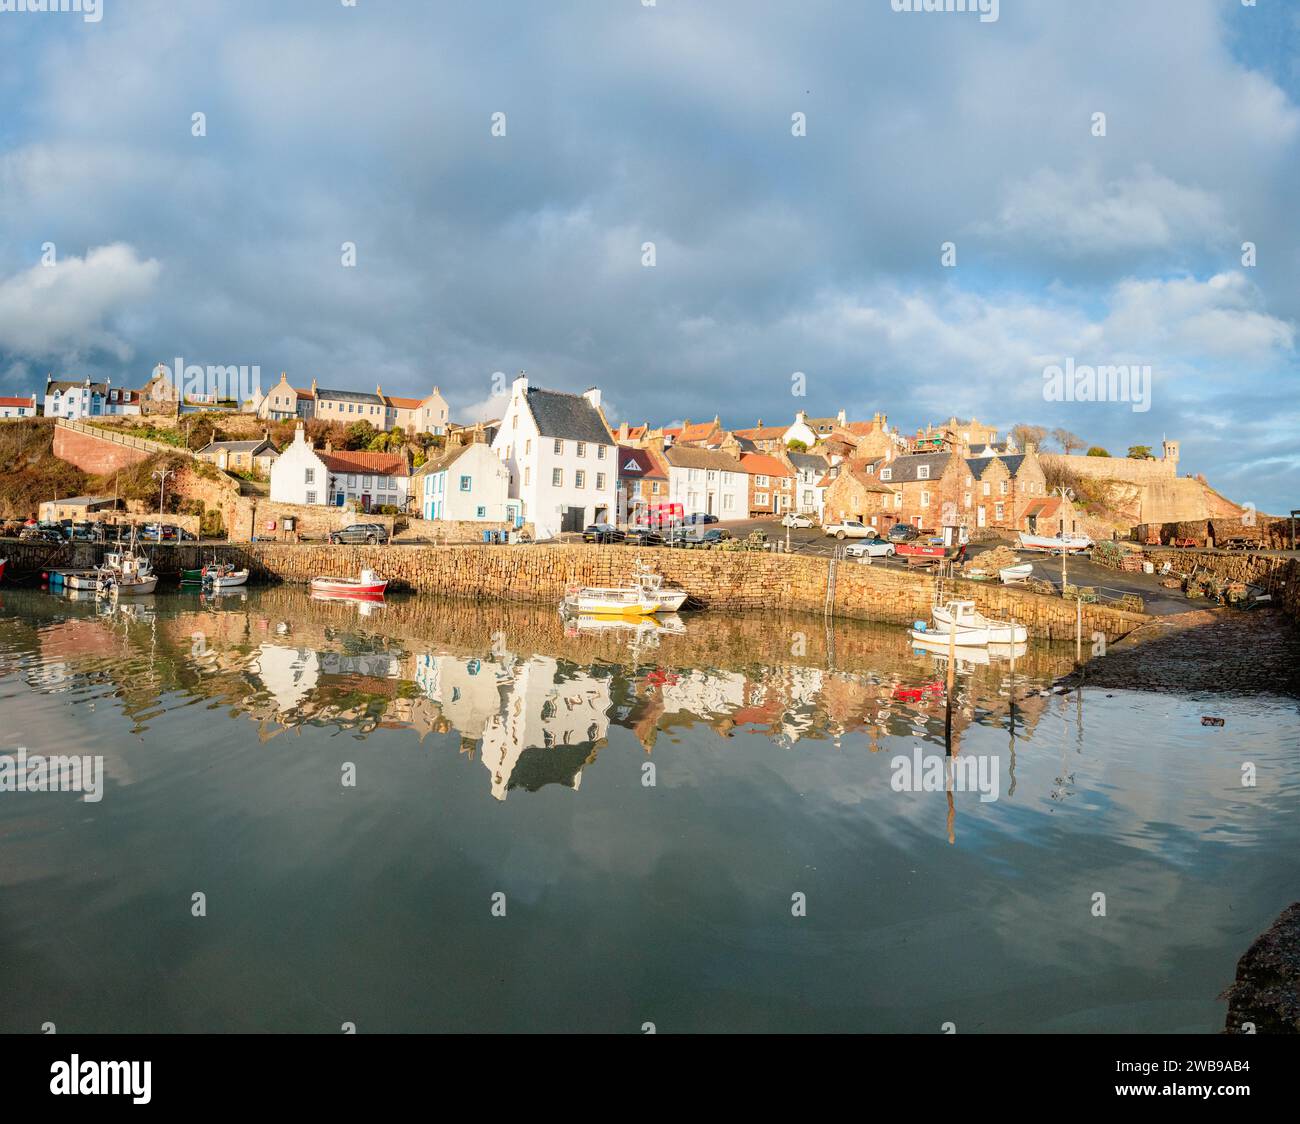 Hübscher Fischerdorfhafen und umliegende Häuser von Crail in Fife Schottland mit Booten und Reflexionen im Wasser Stockfoto